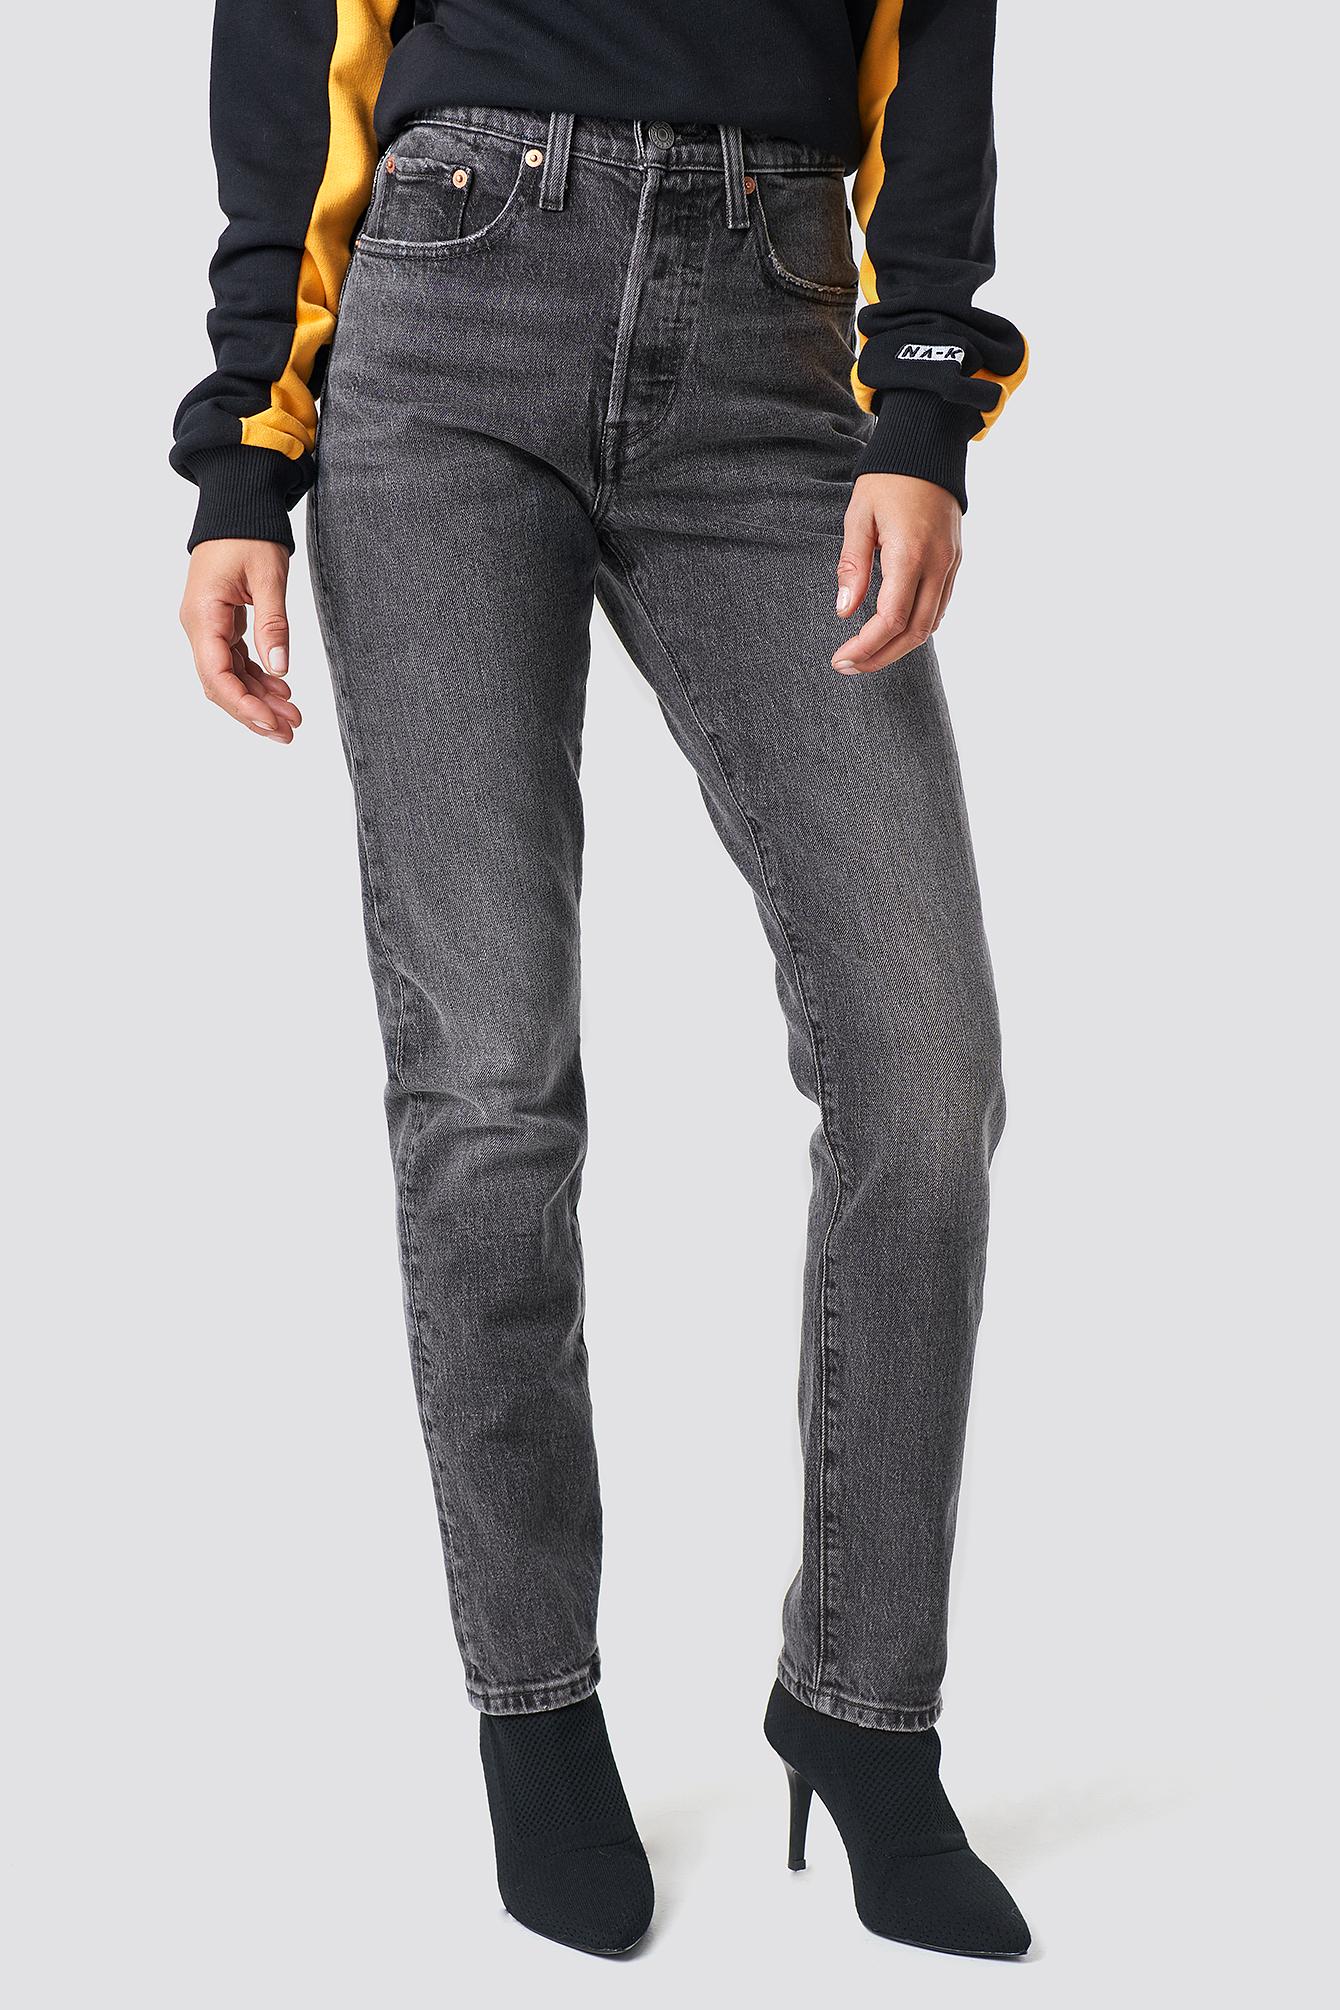 Levi's Denim 501 Skinny Jeans Grey in 